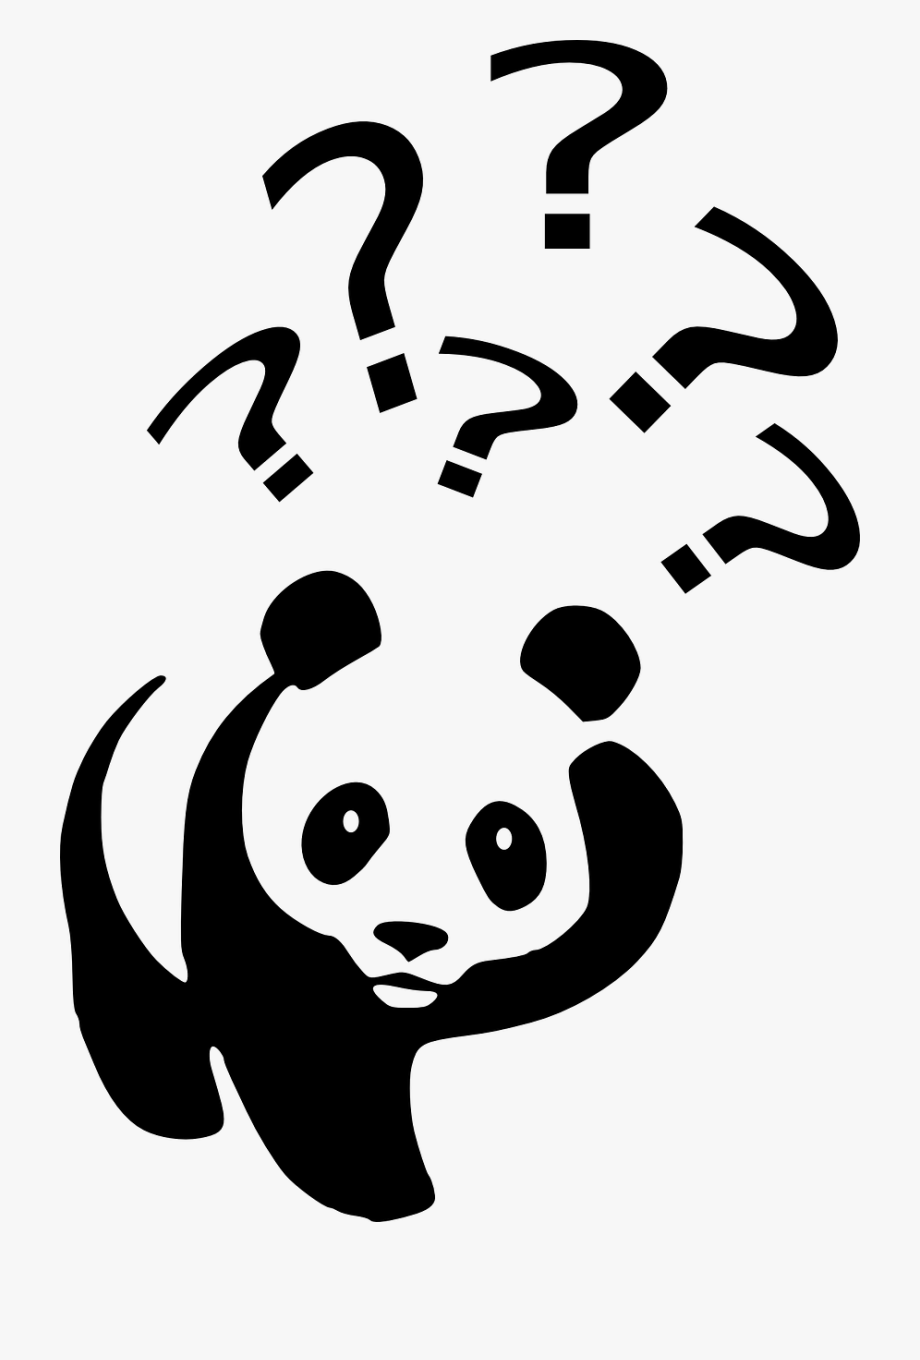 clipart panda cartoonish